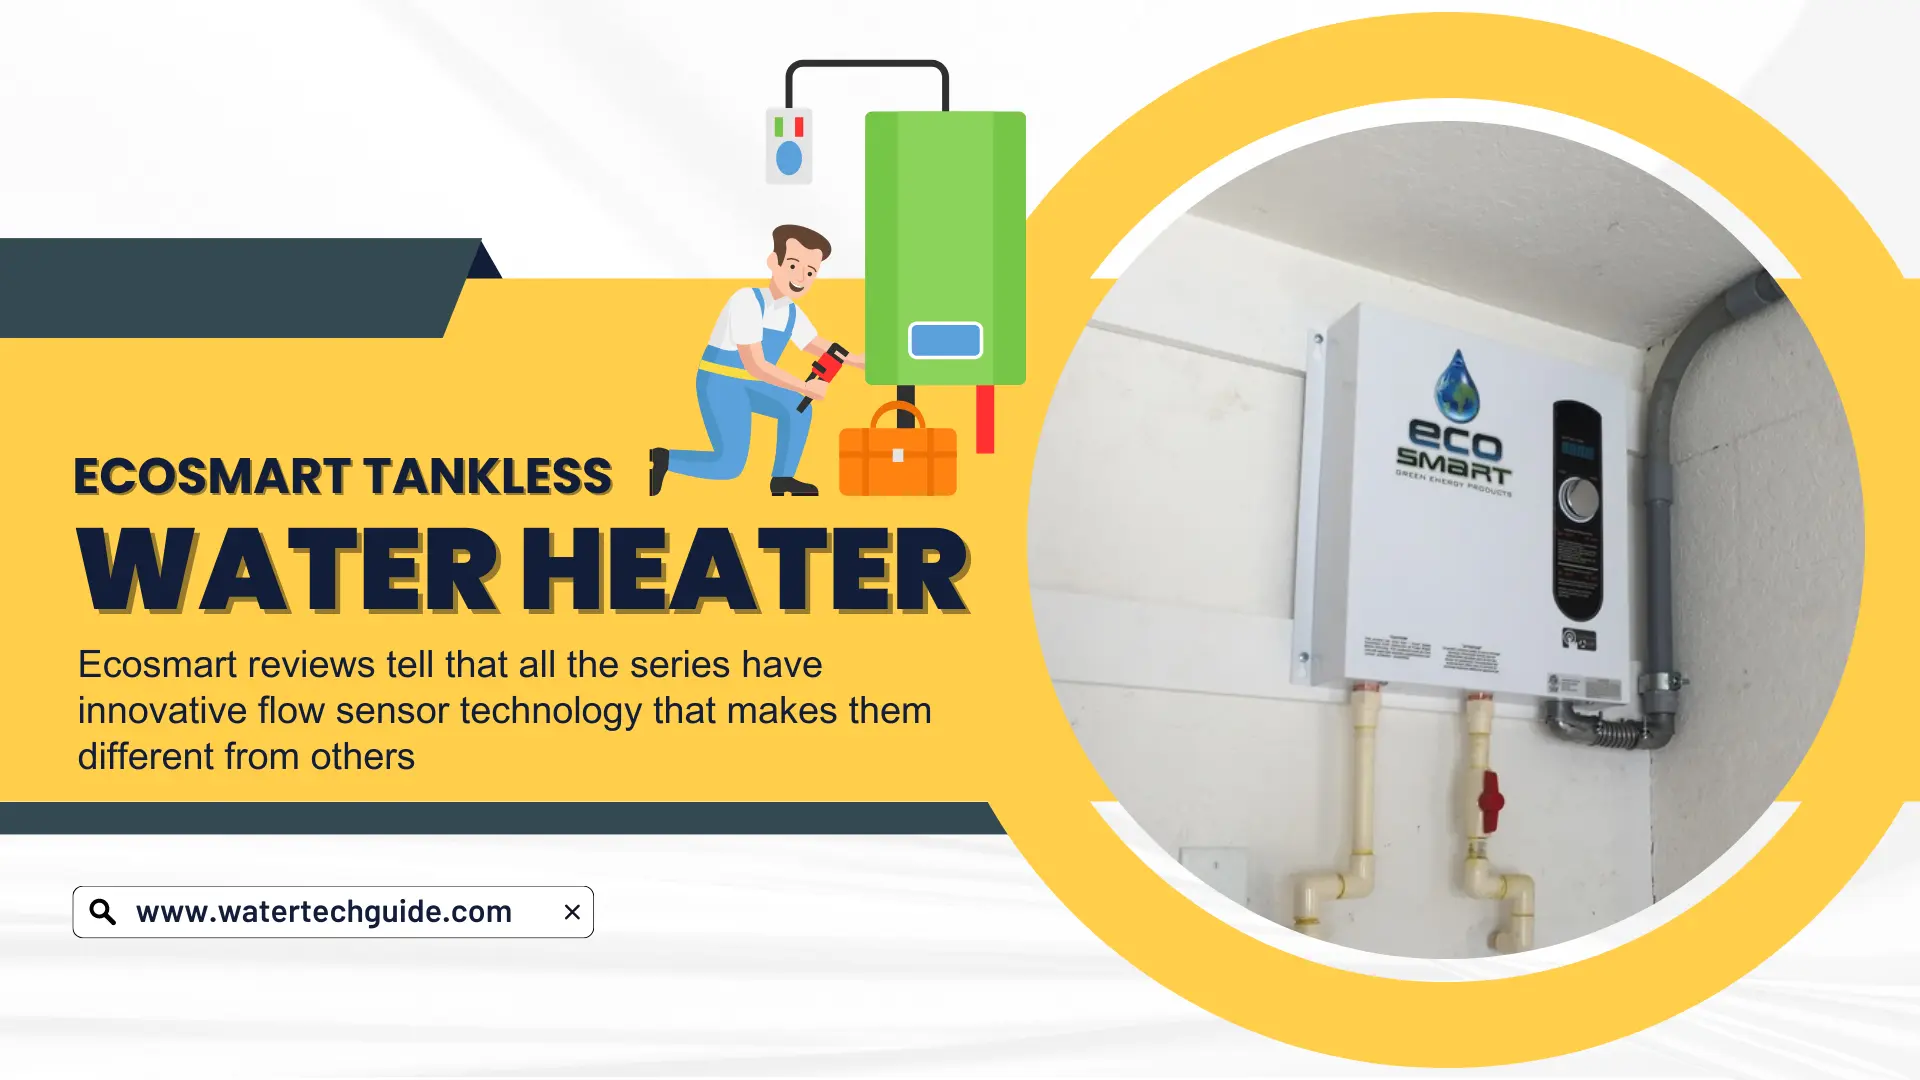 Ecosmart Tankless Water Heater